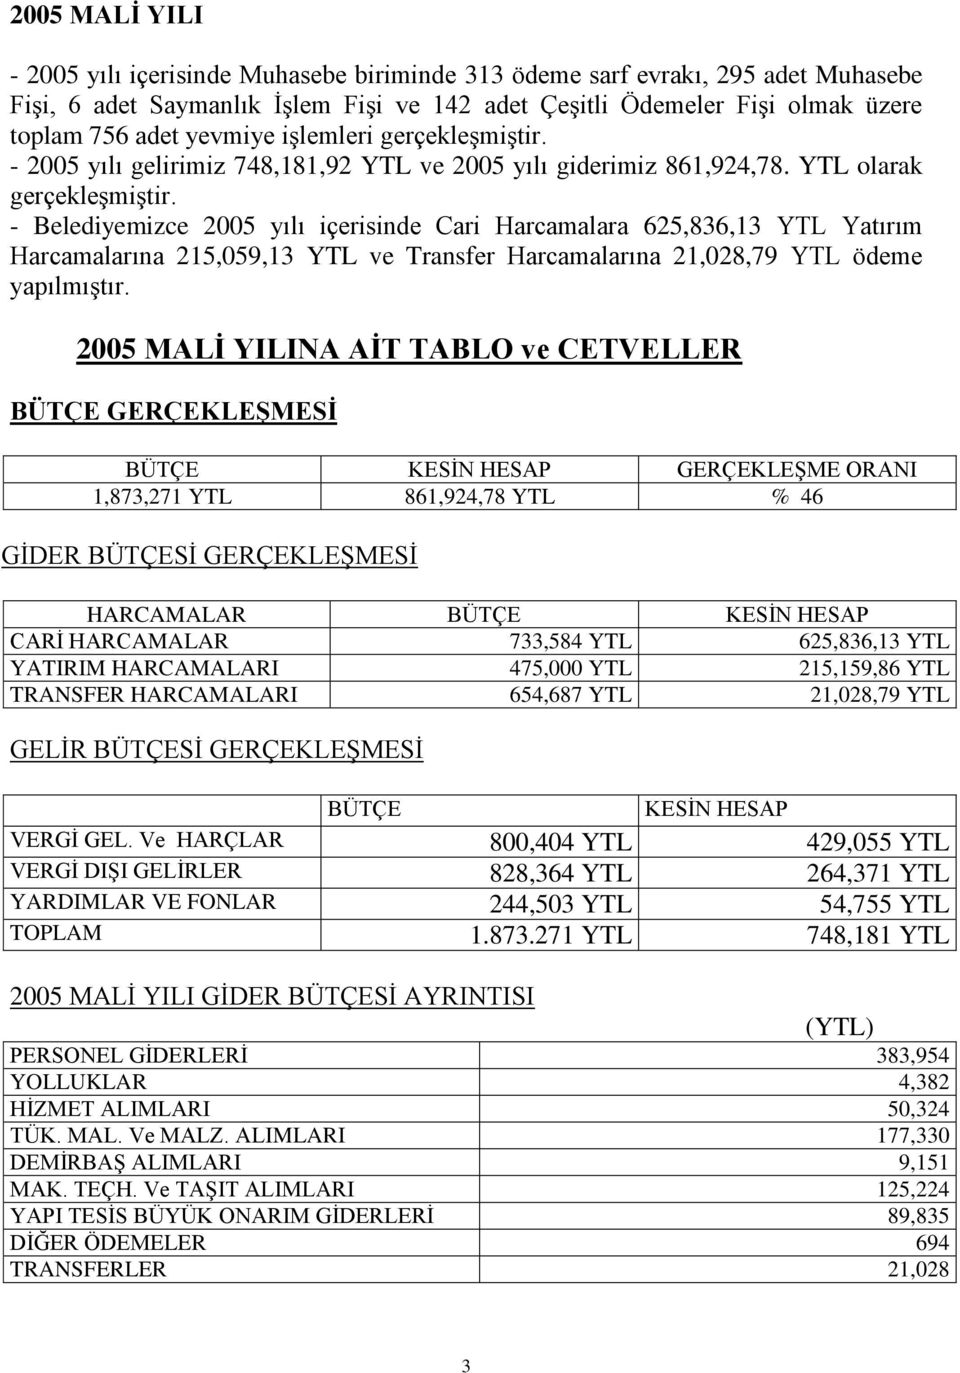 - Belediyemizce 2005 yılı içerisinde Cari Harcamalara 625,836,13 YTL Yatırım Harcamalarına 215,059,13 YTL ve Transfer Harcamalarına 21,028,79 YTL ödeme yapılmıştır.